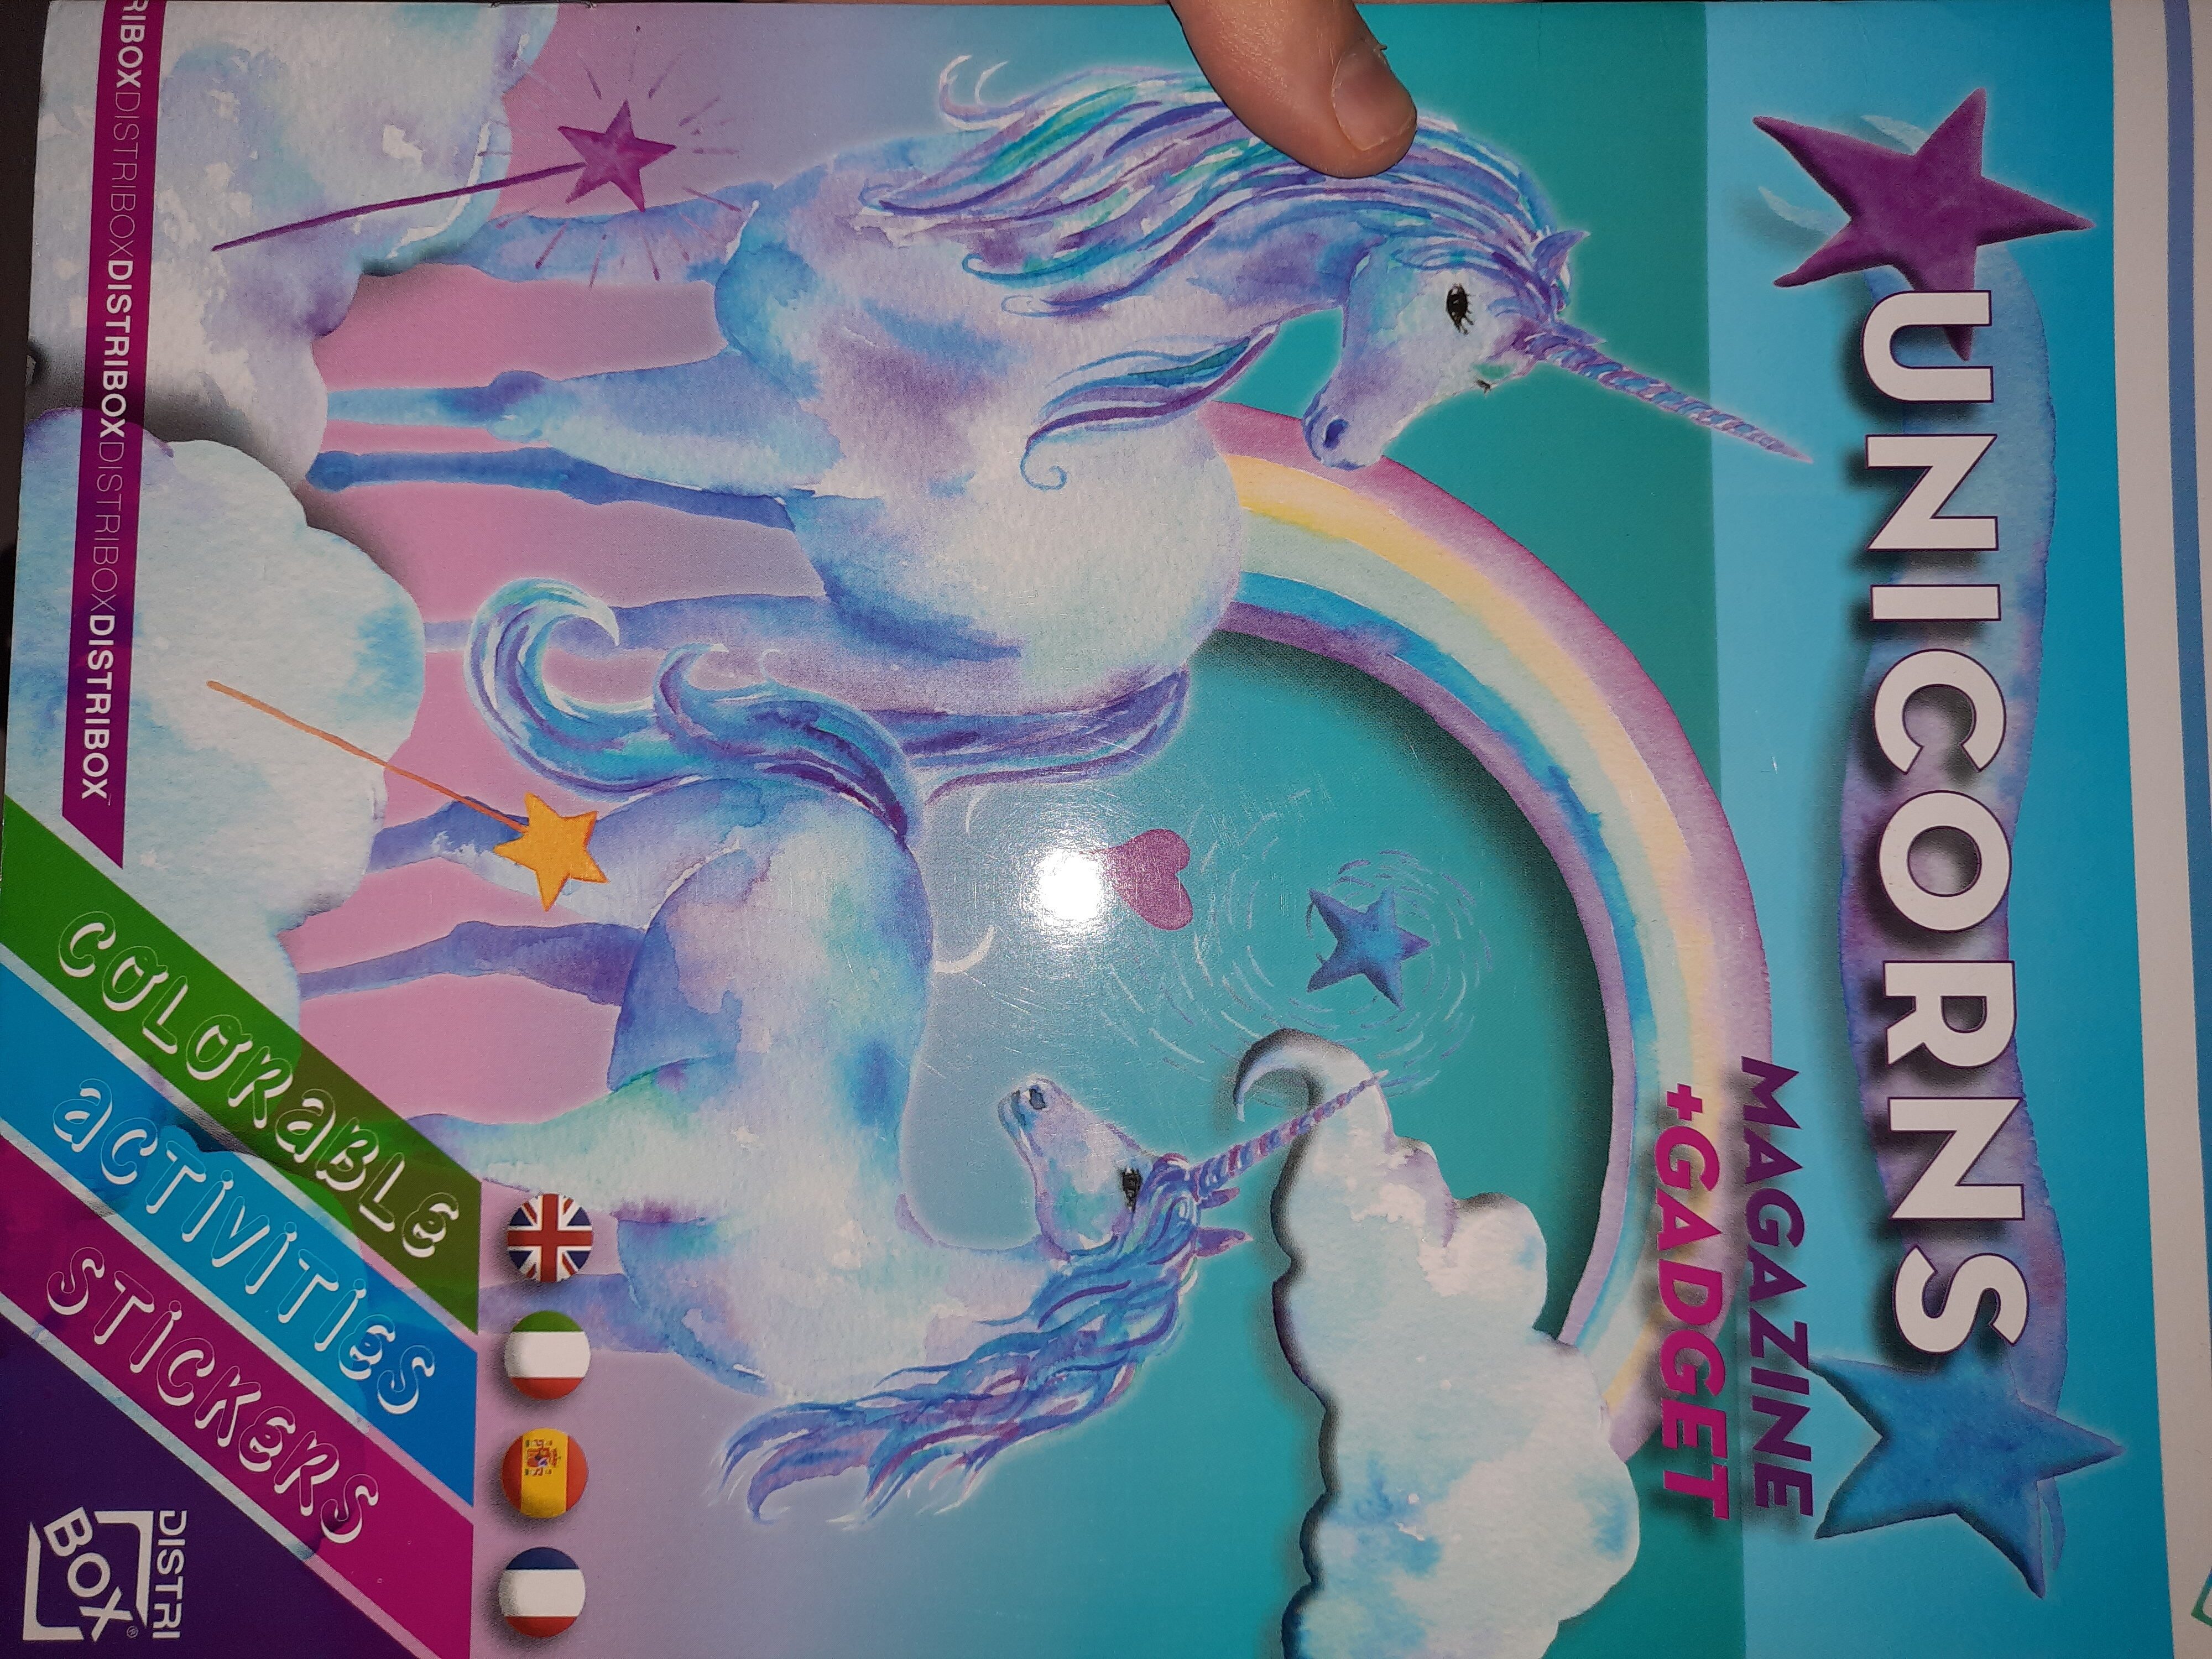 unicorns magazines - Product - fr